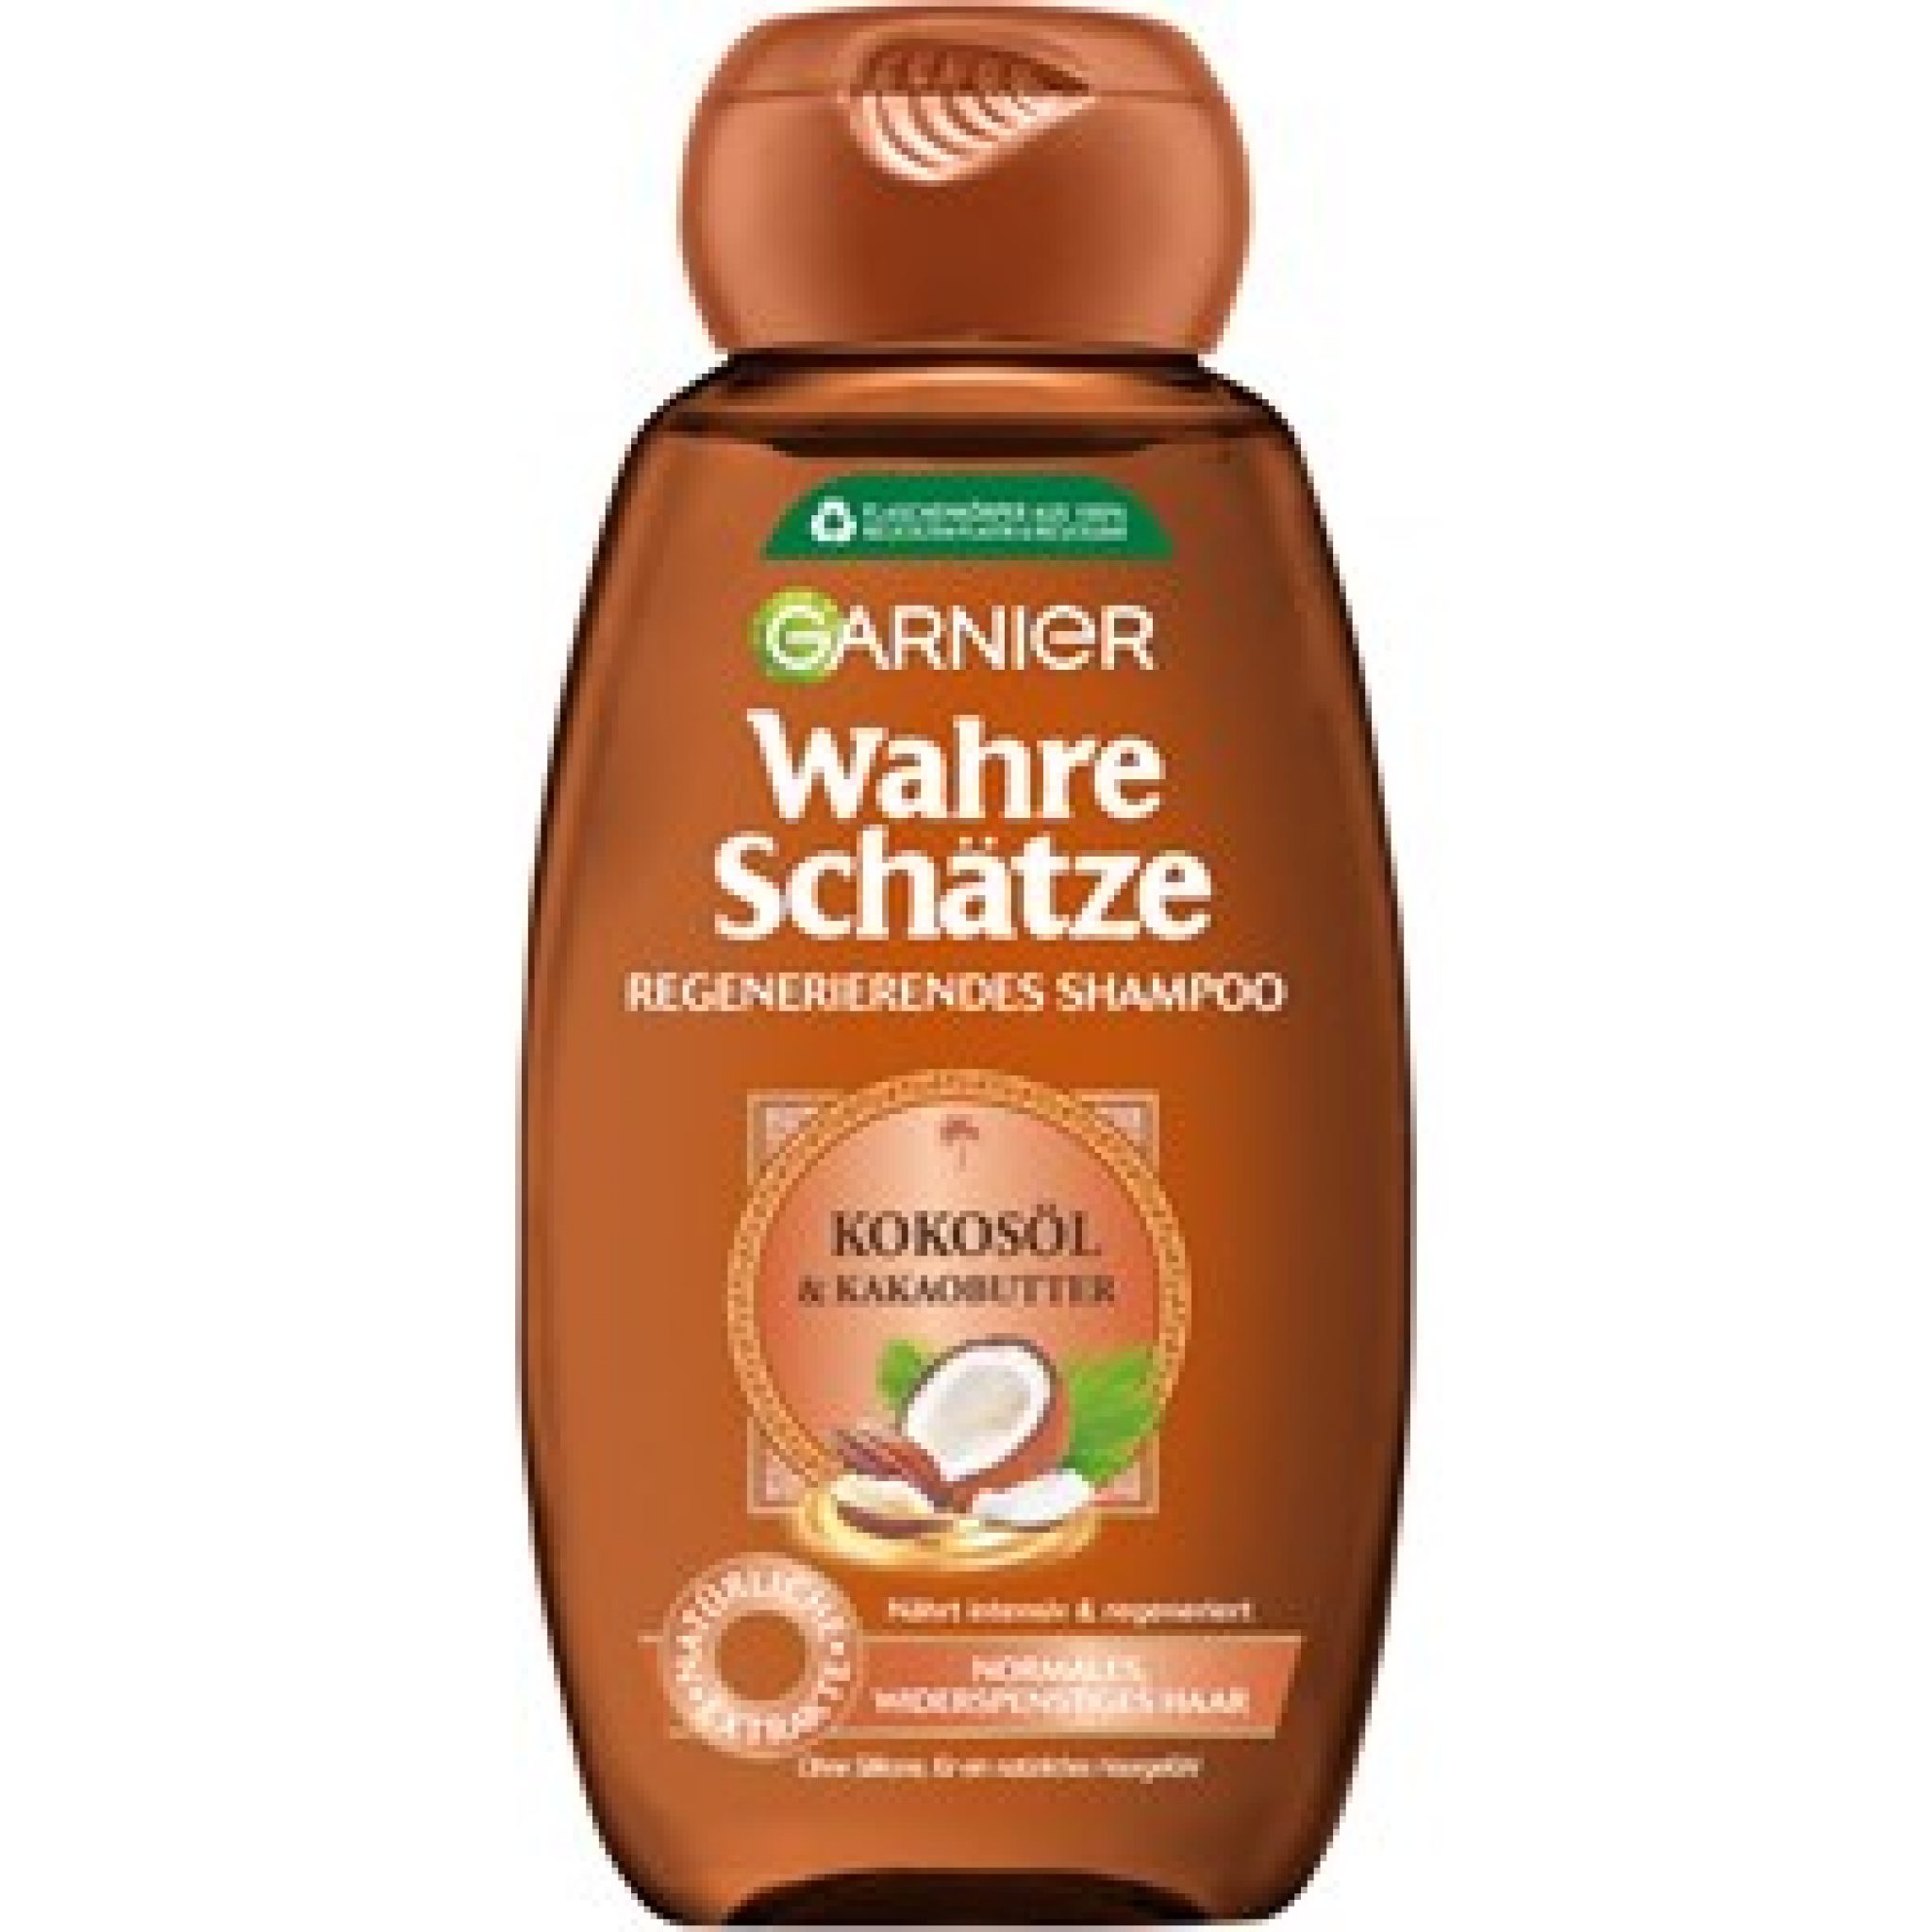 GARNIER-Wahre-Schaetze-Kokosoel-Kakaobutter-Regenerierendes-Shampoo_bewertung